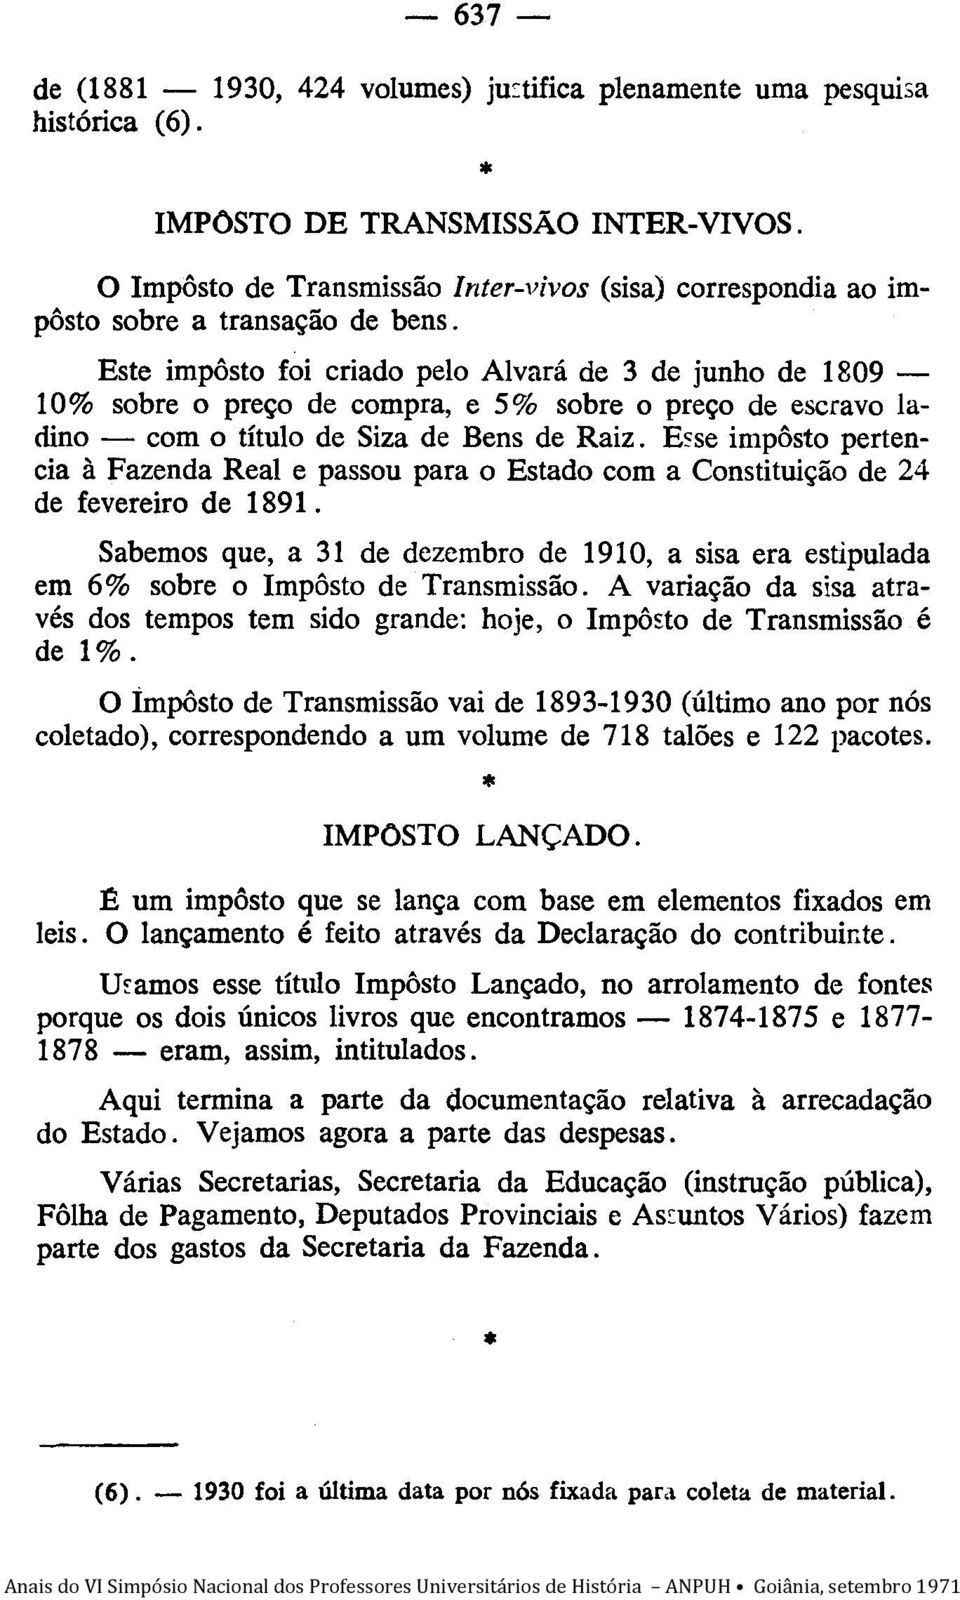 Este impôsto foi criado pelo Alvará de 3 de junho de 1809-10% sobre o preço de compra, e 5% sobre o preço de escravo ladino - com o título de Siza de Bens de Raiz.